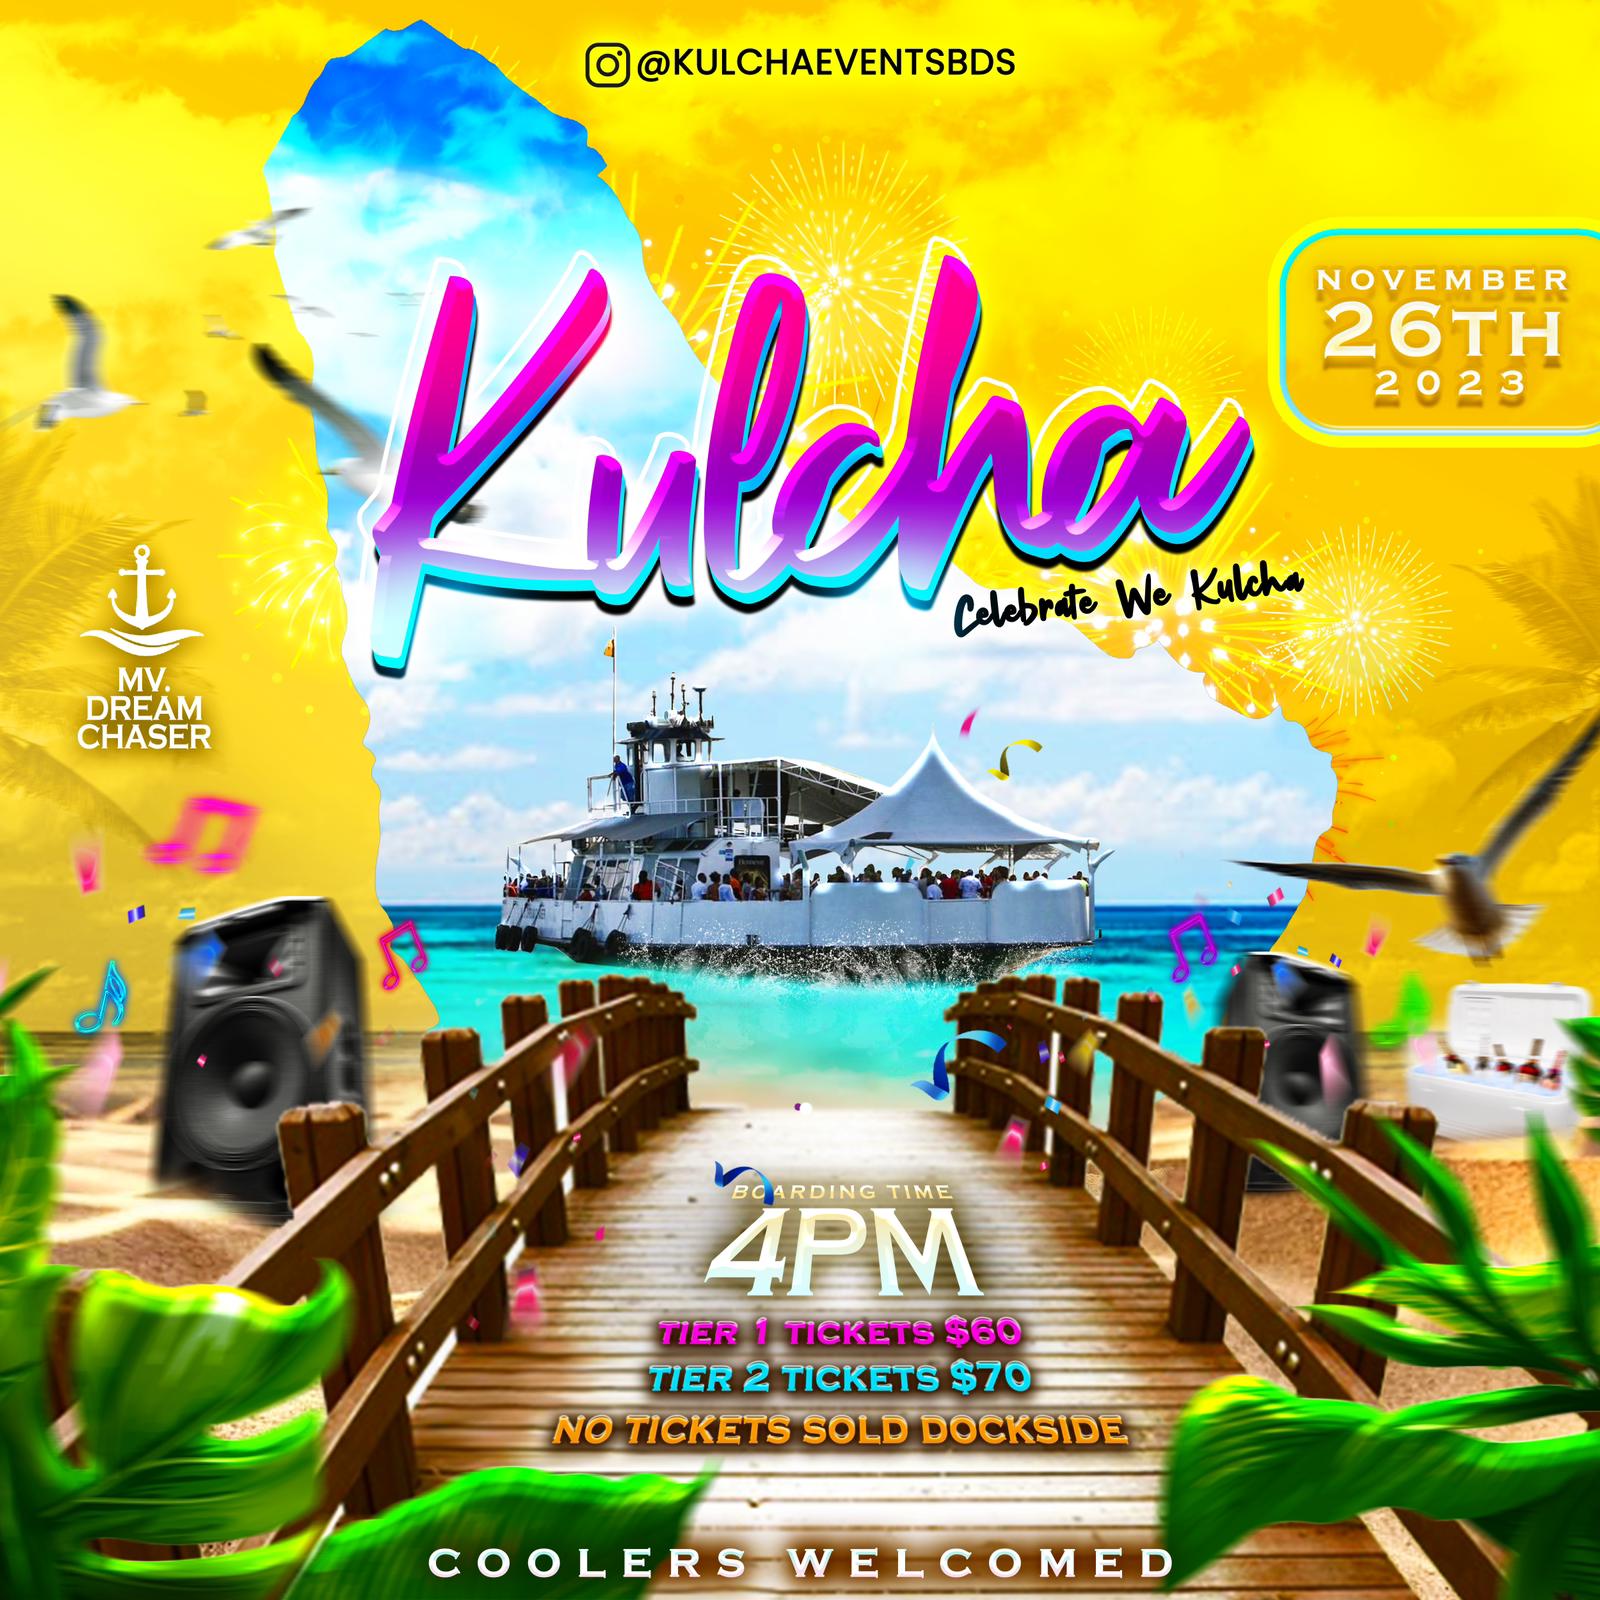 Kulcha - Celebrate We Kulcha